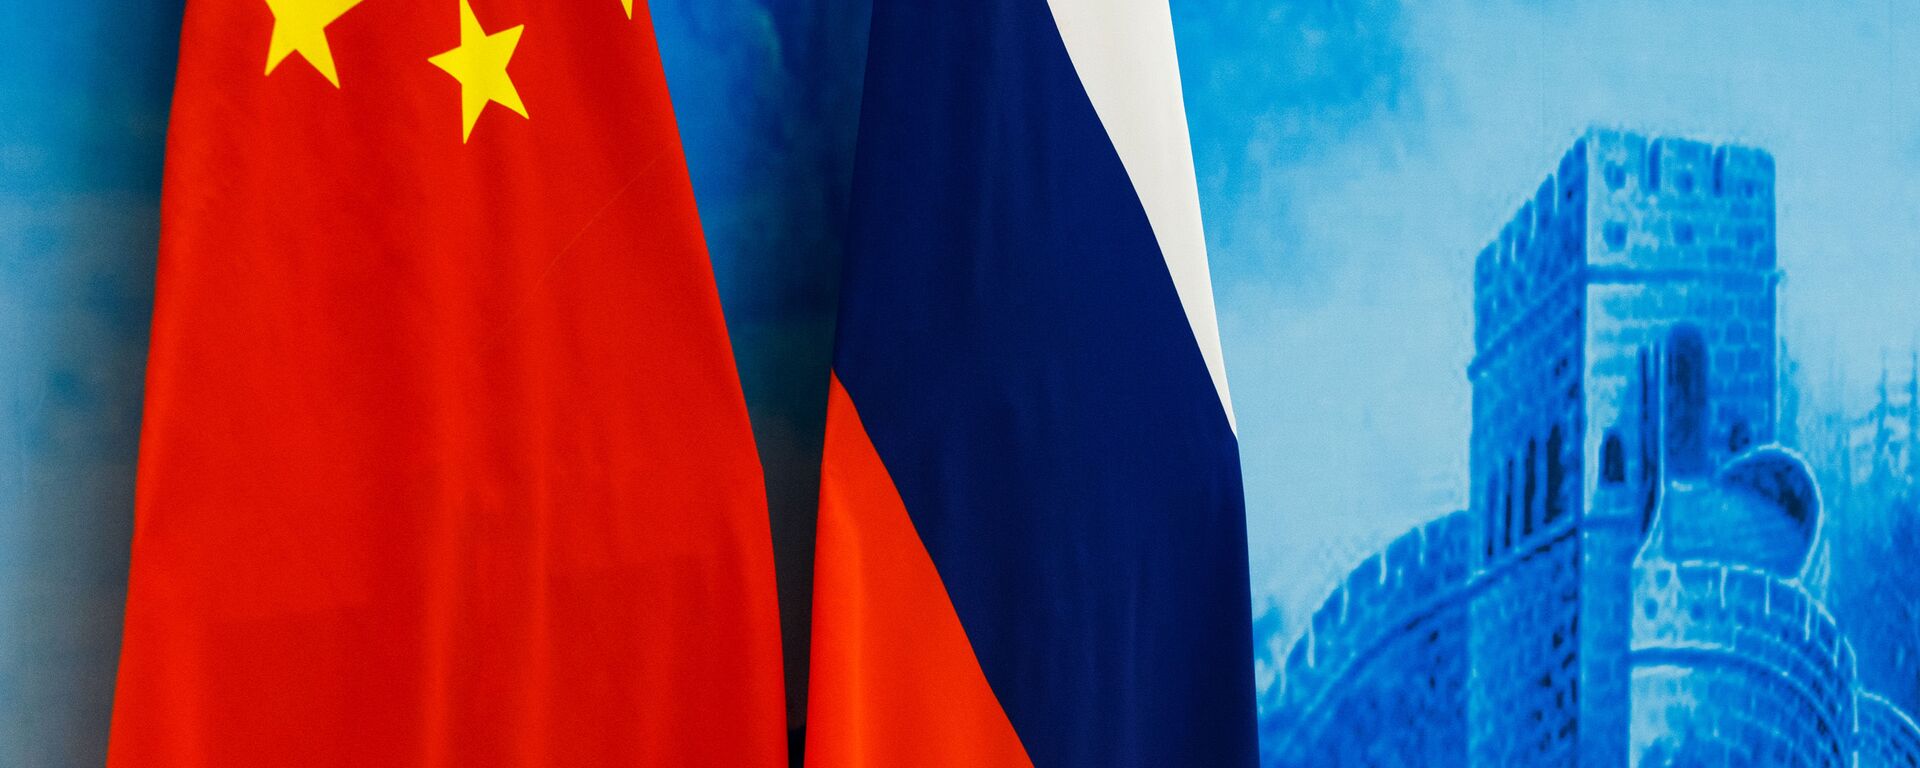 Флаги России и КНР на XXIII заседании межправительственной комиссии по военно-техническому сотрудничеству в Пекине. - Sputnik Абхазия, 1920, 10.09.2021